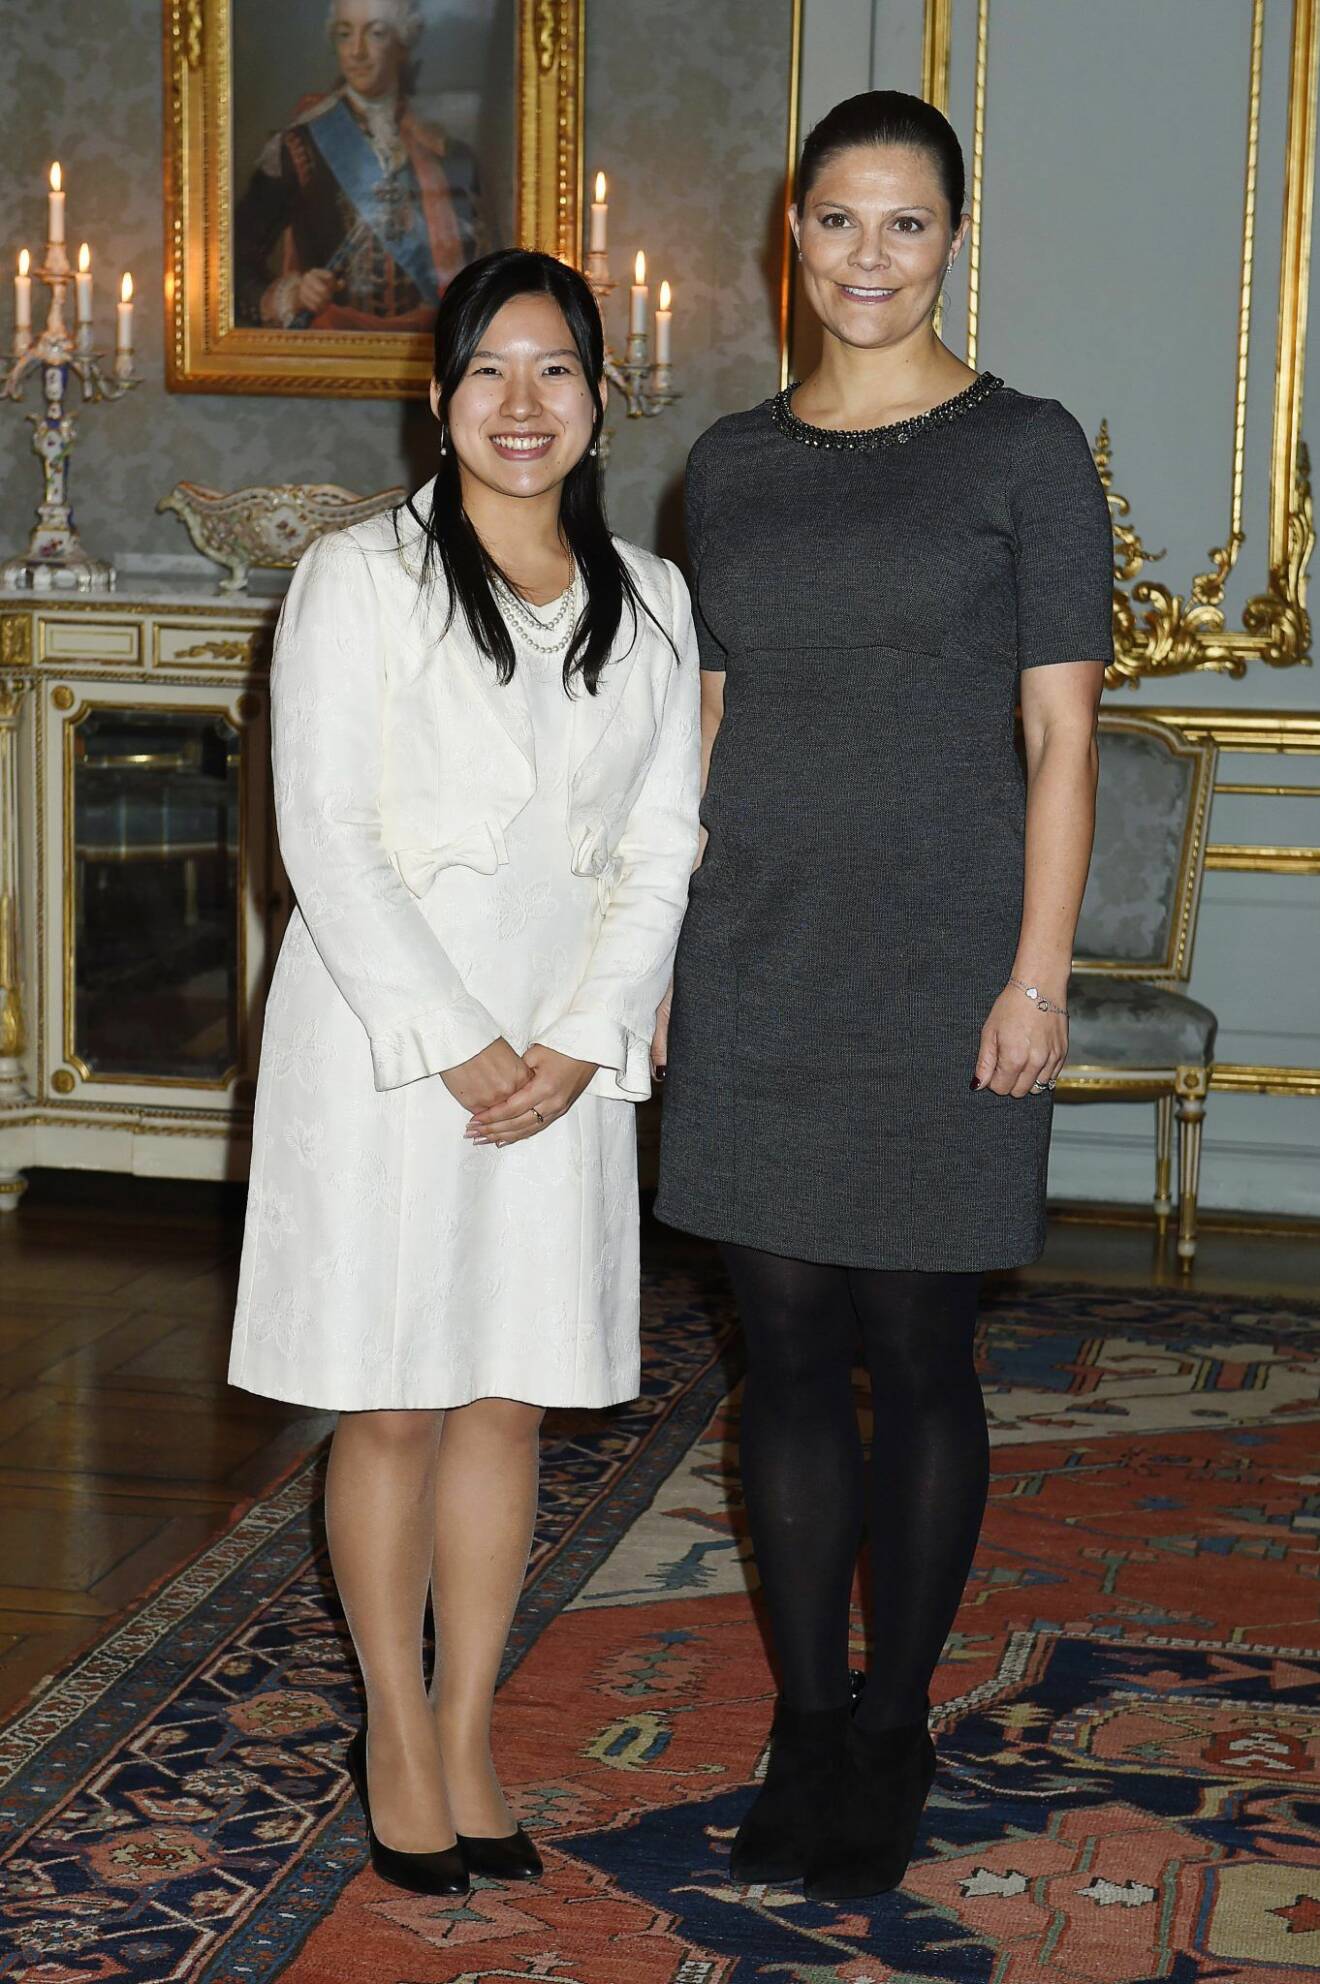 Prinsessan Ayako Takamado på besök i Sverige.